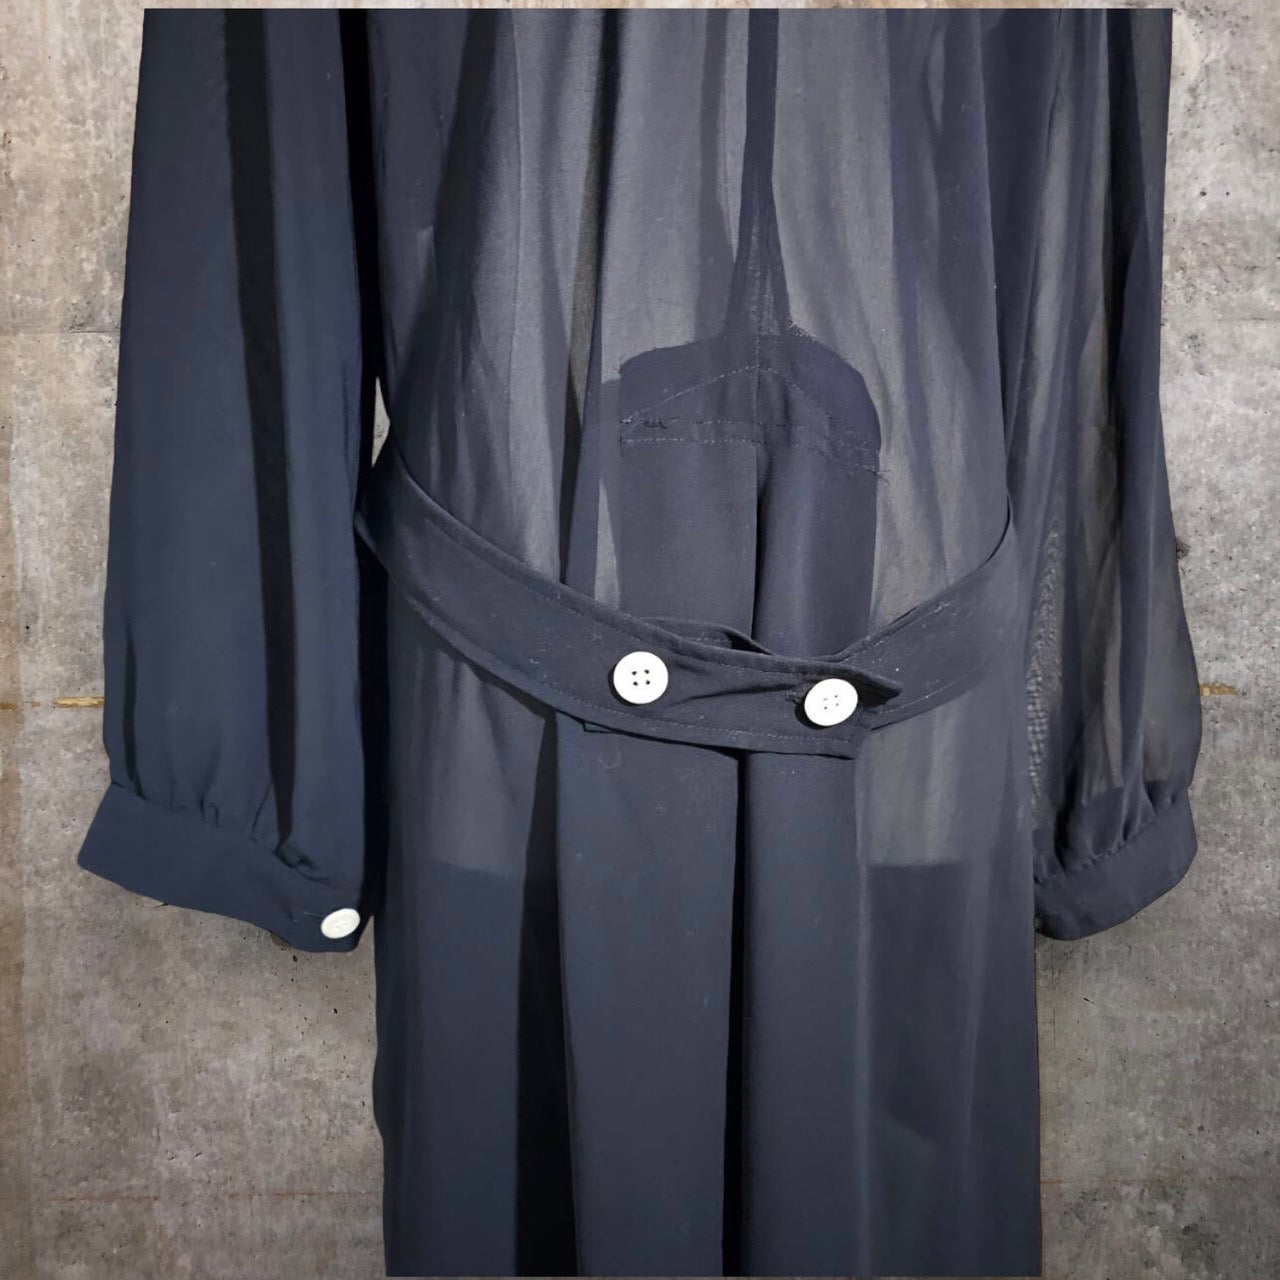 robe de chambre COMME des GARCONS(ローブドシャンブルコムデギャルソン) 90's See-through long coat/シースルーロングコート/ワンピース/川久保玲 RO-100080 SIZE FREE ブラック AD1994